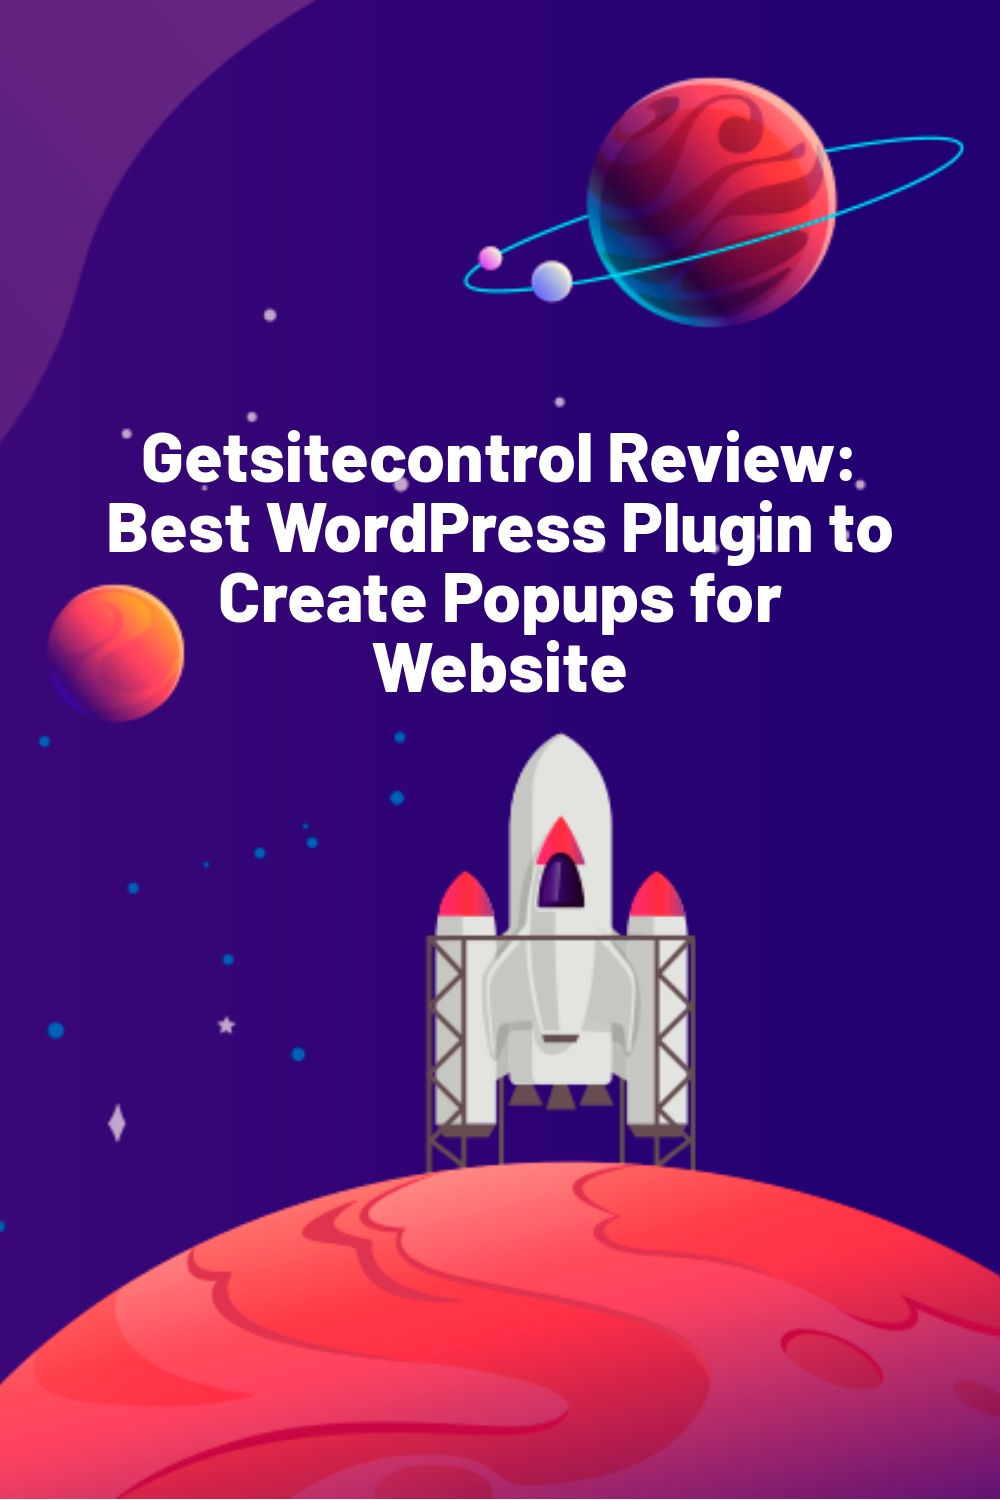 Getsitecontrol Review: Best WordPress Plugin to Create Popups for Website